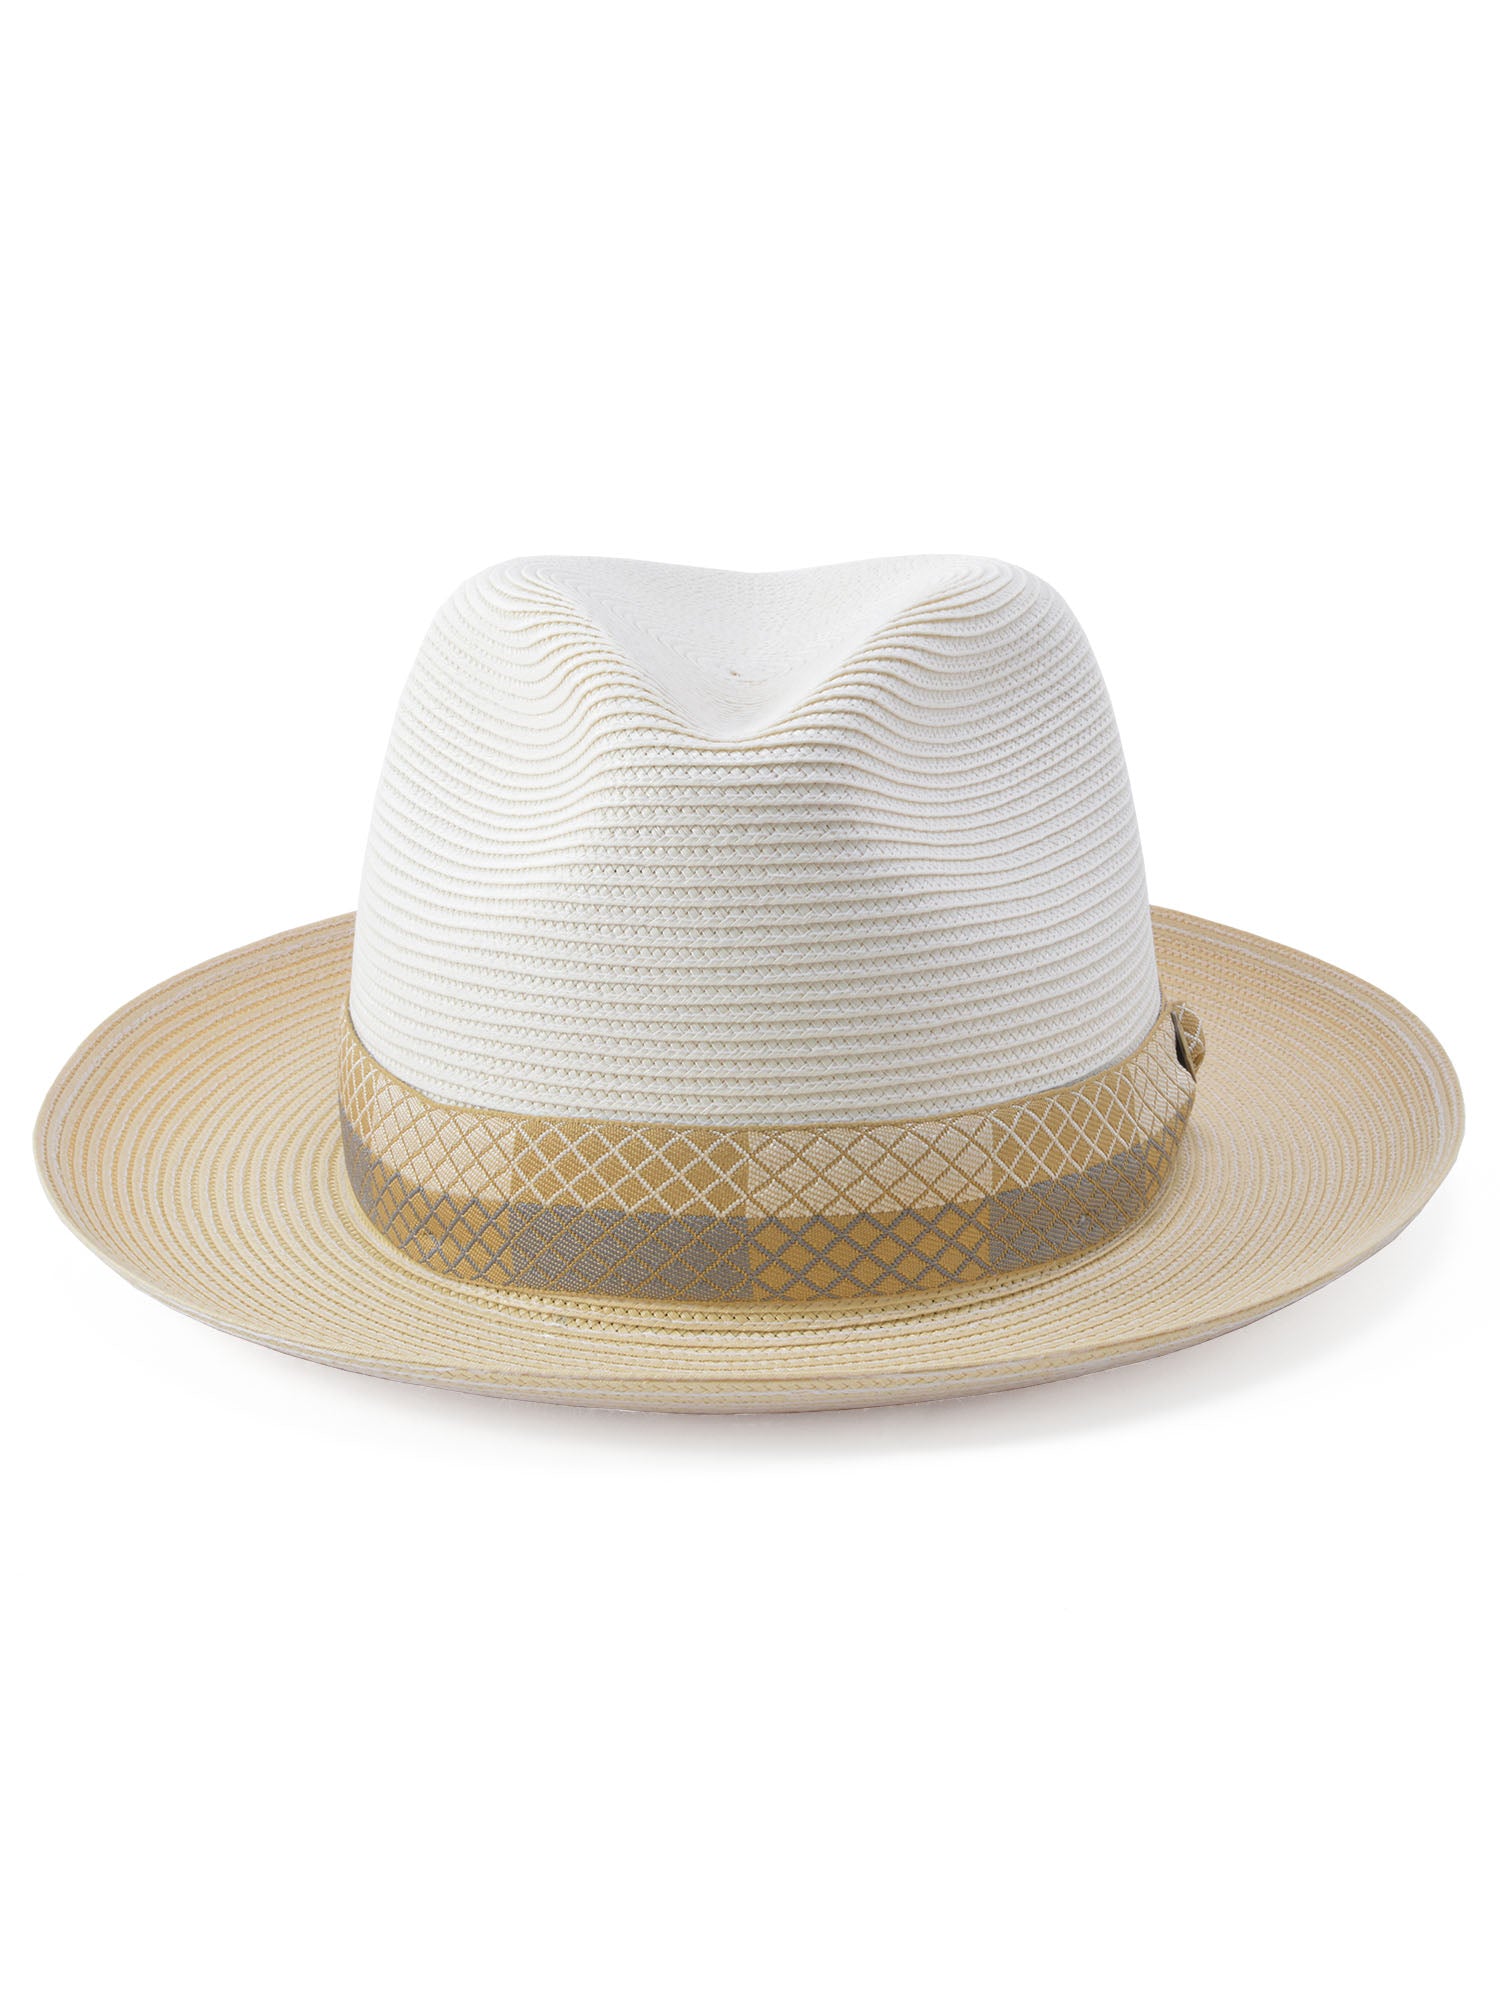 Stetson Andover Florentine Milan Straw Hat